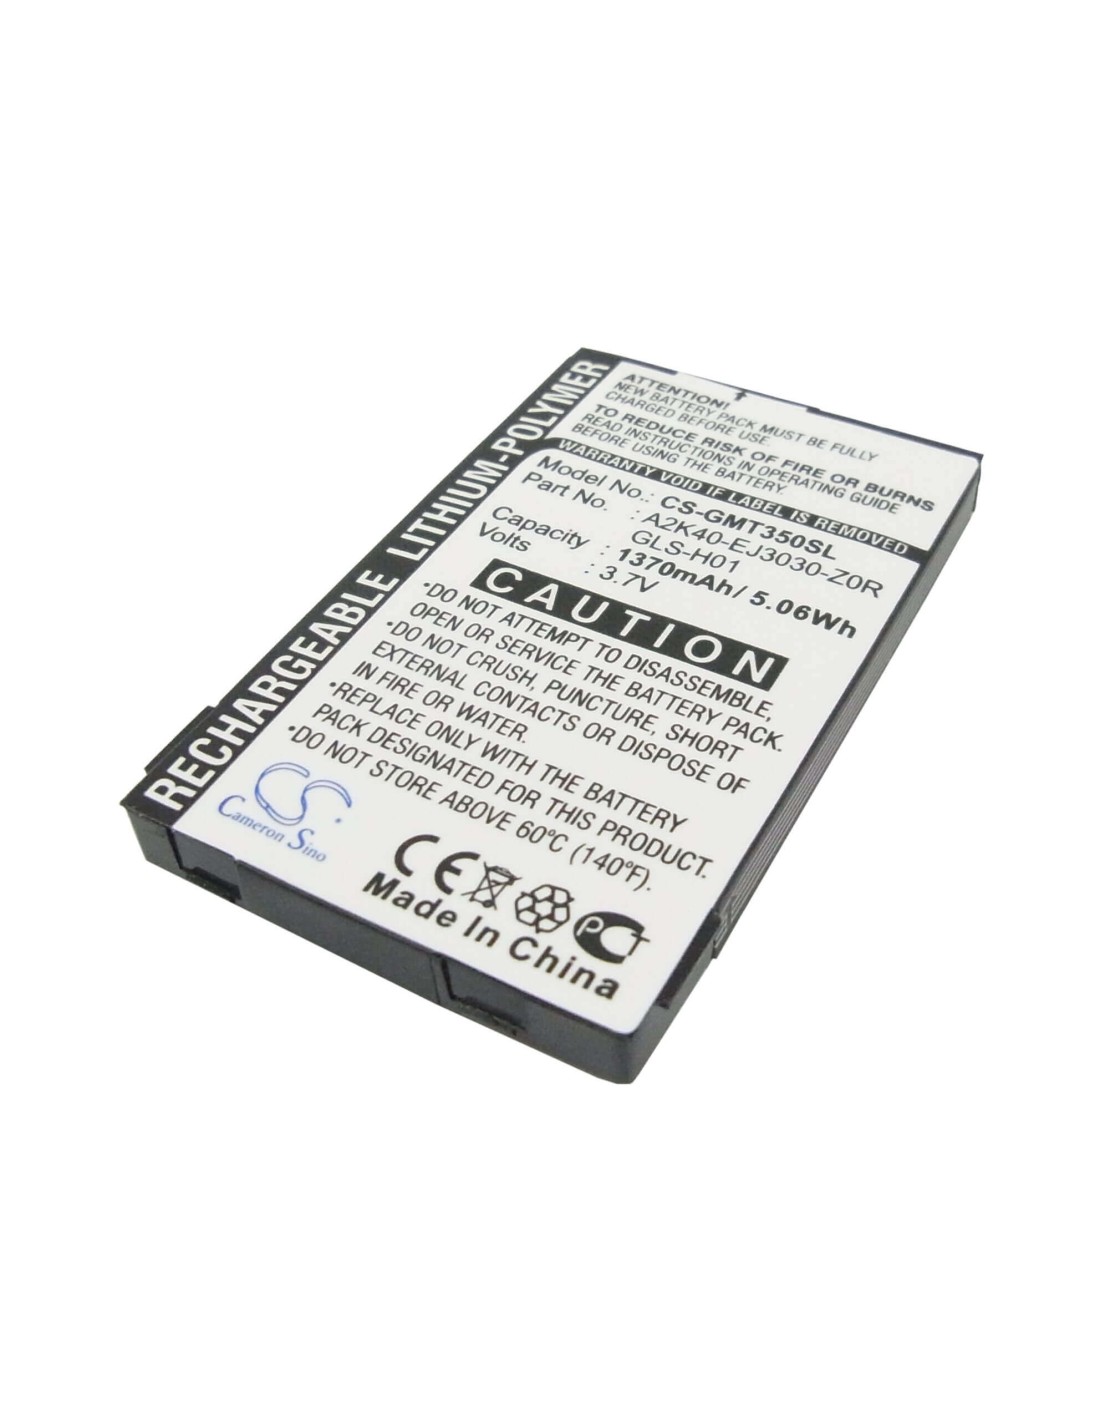 Battery for Gigabyte gSmart G300, gSmart i350 3.7V, 1370mAh - 5.07Wh